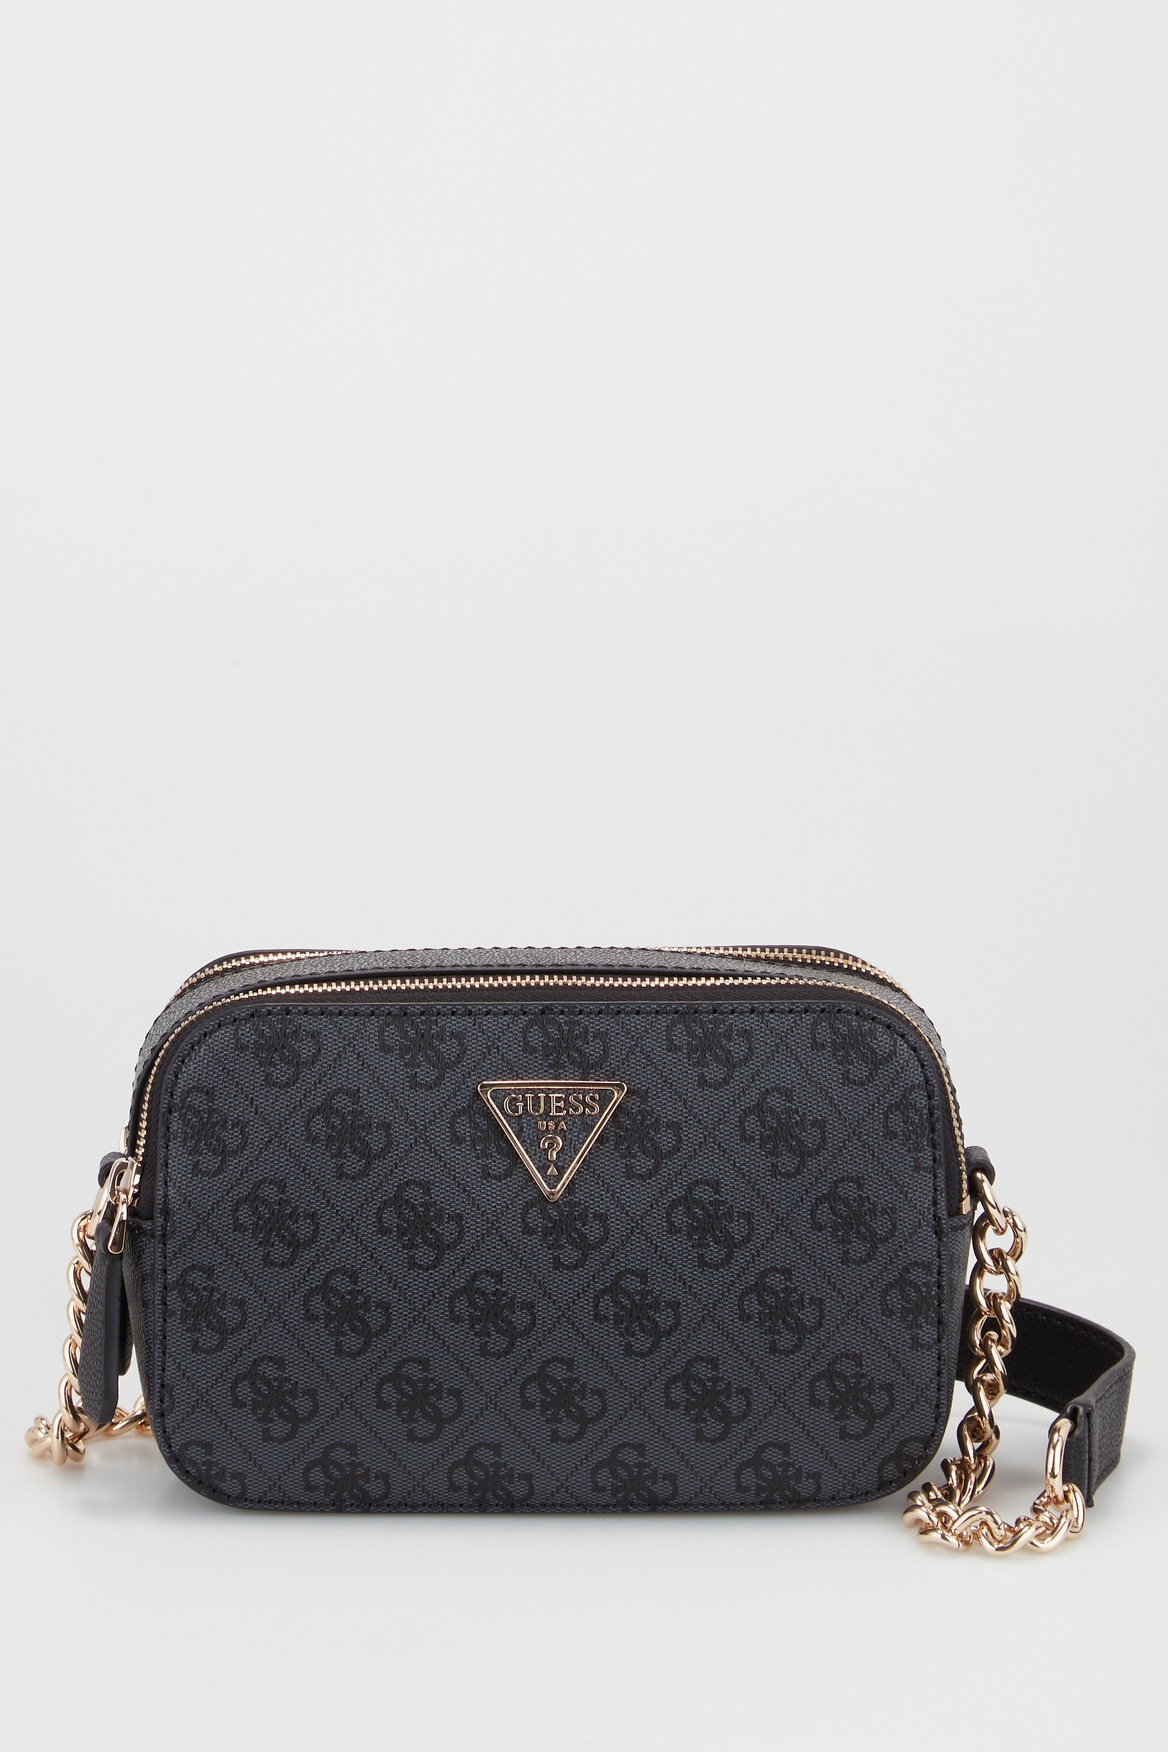 Luxury Designer Caviar Crossbody Coin Purse Strandbags And Clutch Handbag  For Women Black From Cbc13344, $19.69 | DHgate.Com